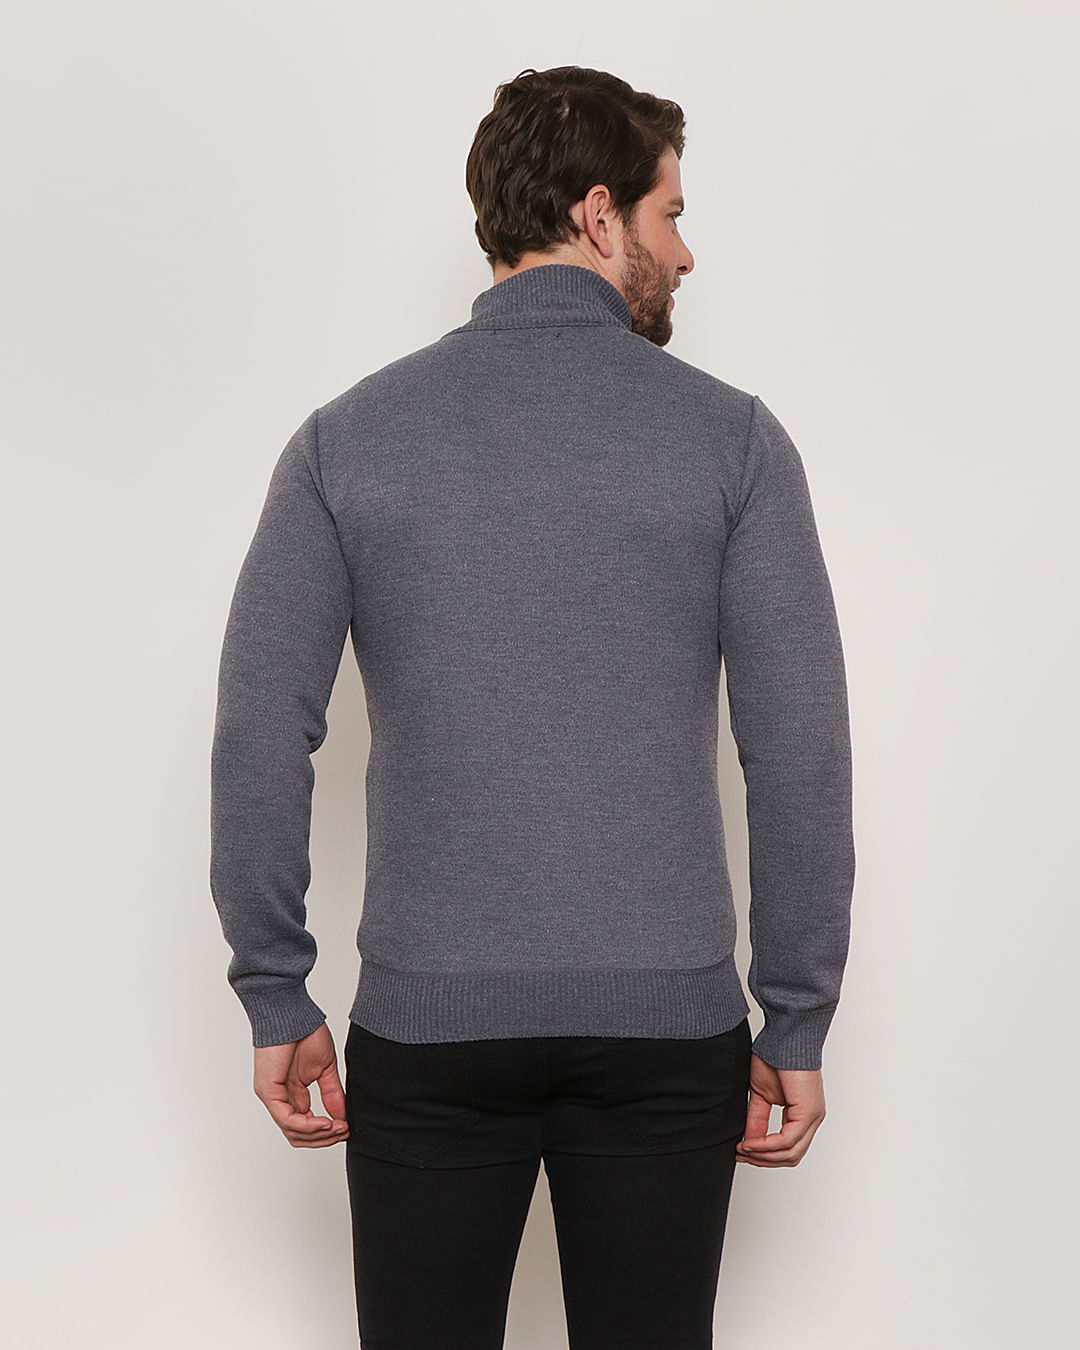 Sweater camisola Homem, poliéster, cor cinza, tricotado relevos torcidos -  AudaciouZ